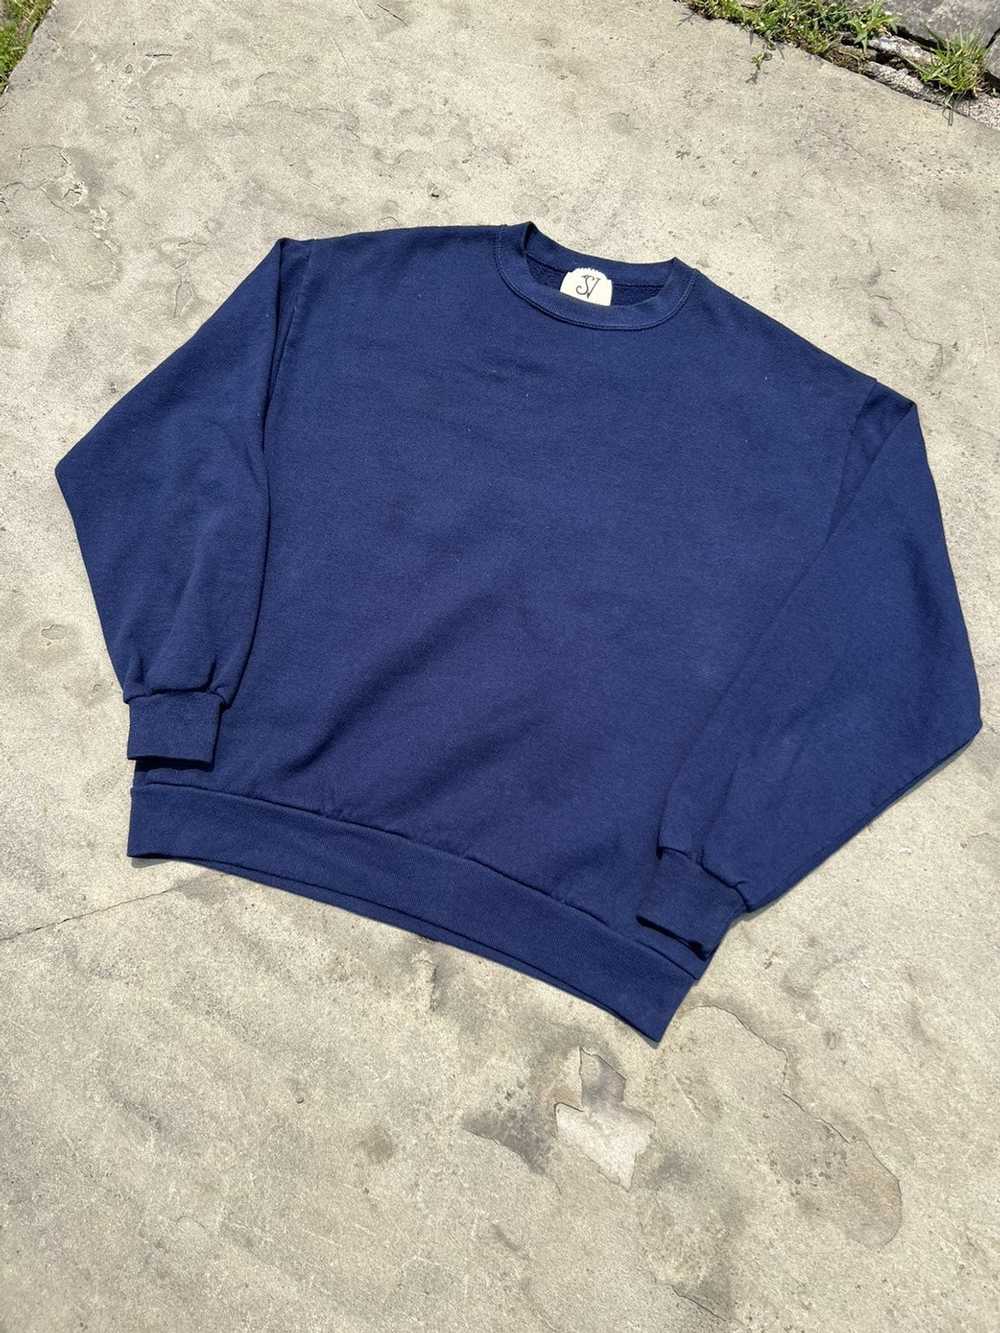 Custom × Handmade × Streetwear deep ocean blue wi… - image 5